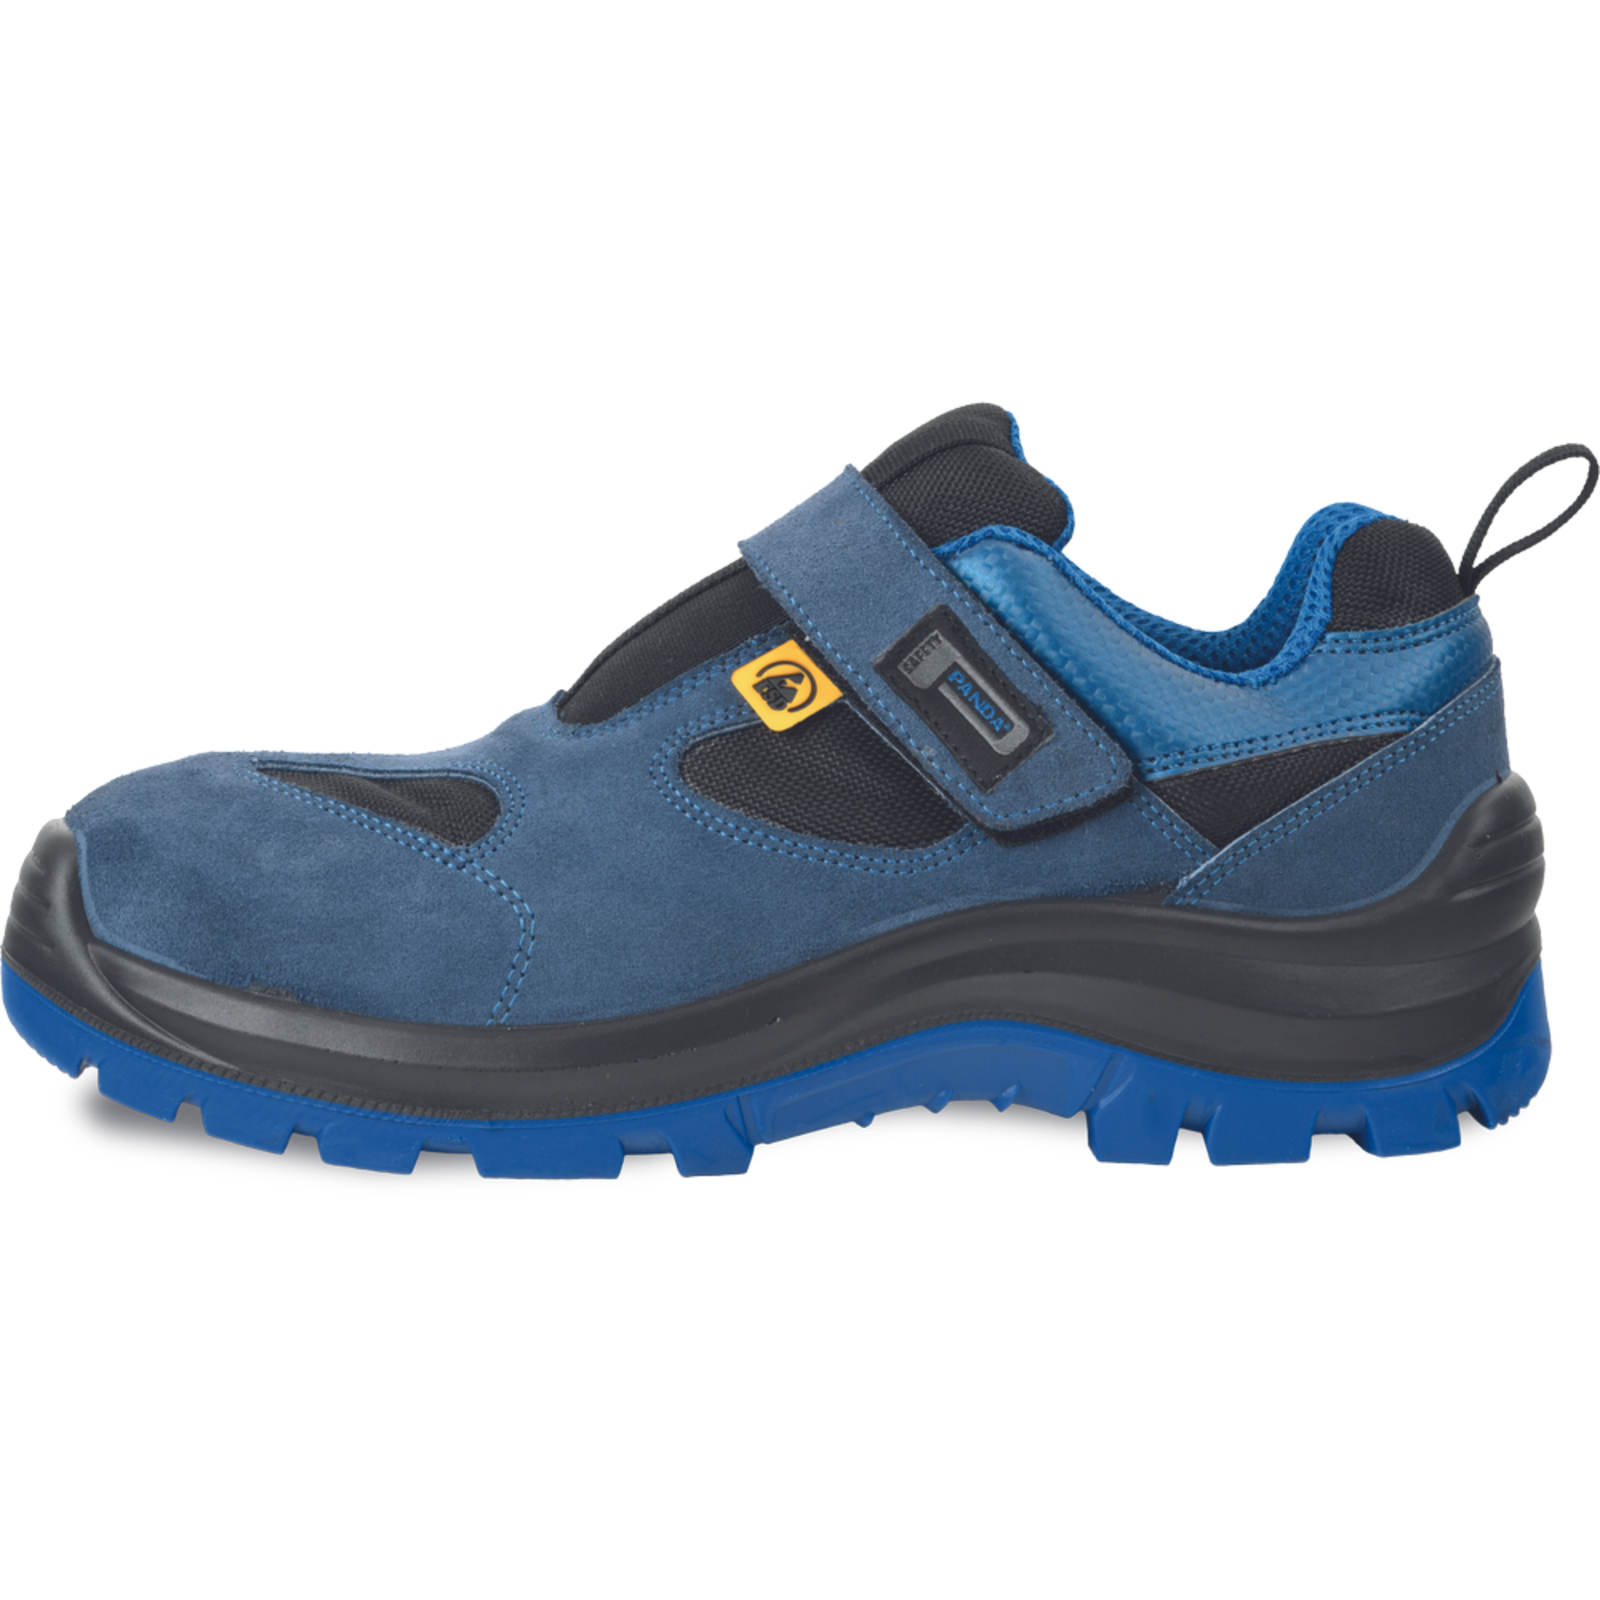 Bezpečnostné pracovné sandále Panda Wilk MF ESD S1P SRC - veľkosť: 46, farba: modrá/čierna